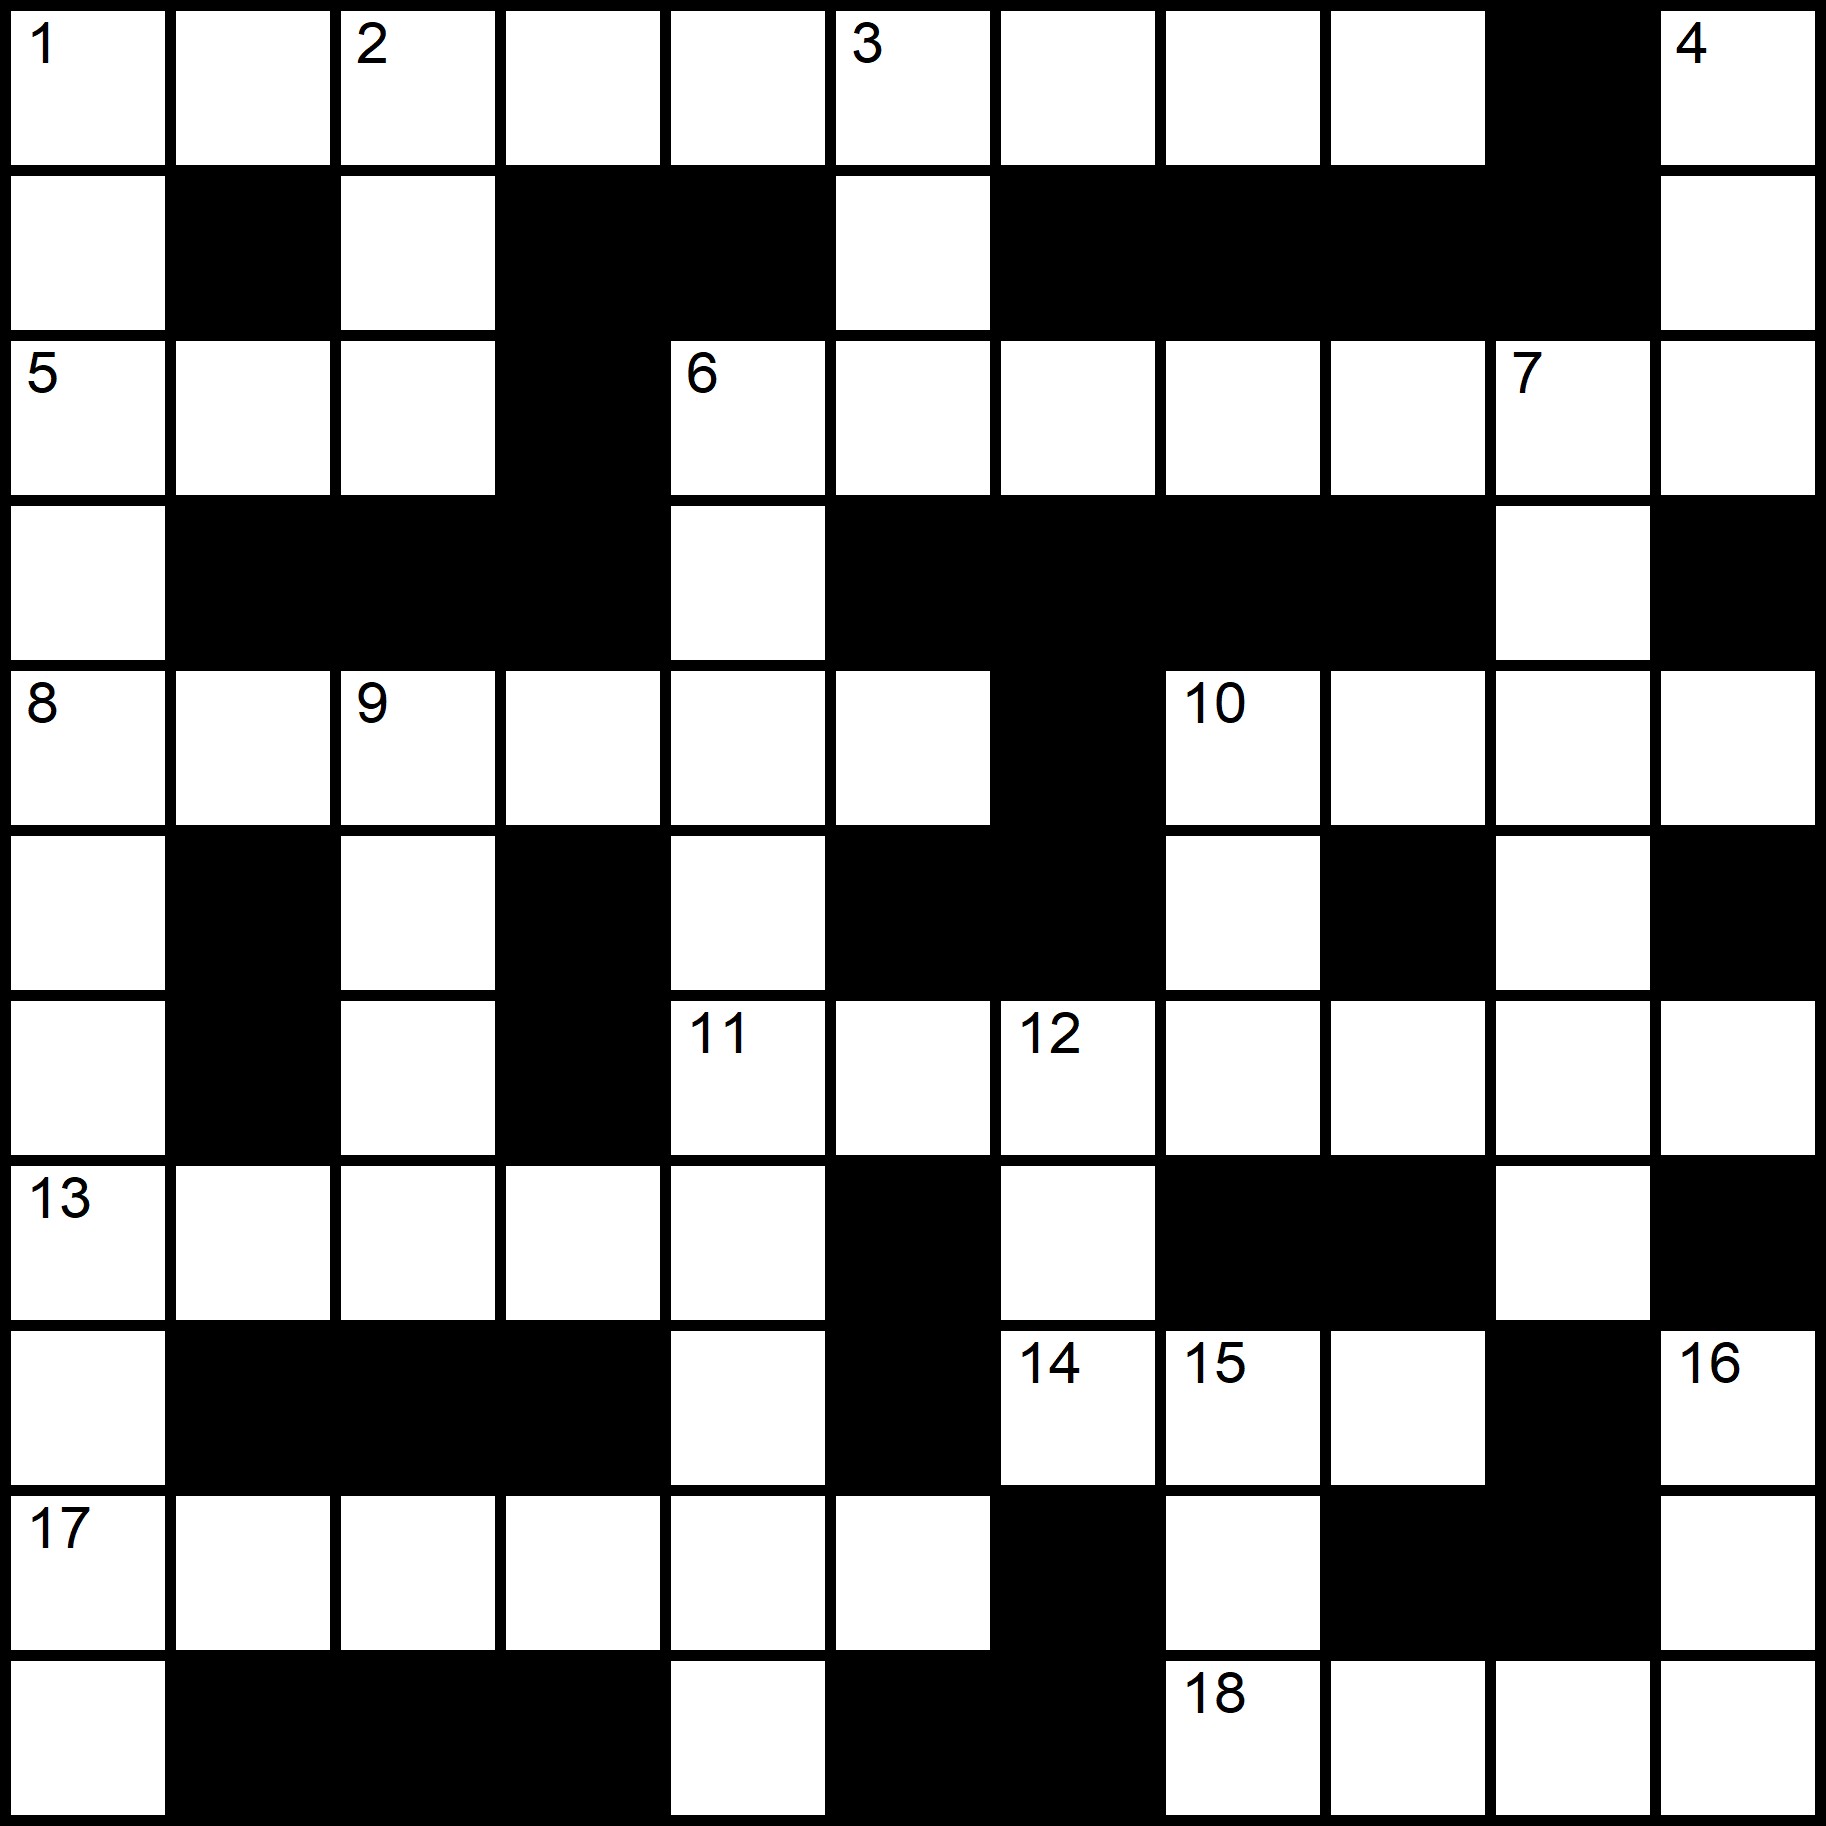 ESL Crosswords -
Placidus Flora - Crossword number twelve